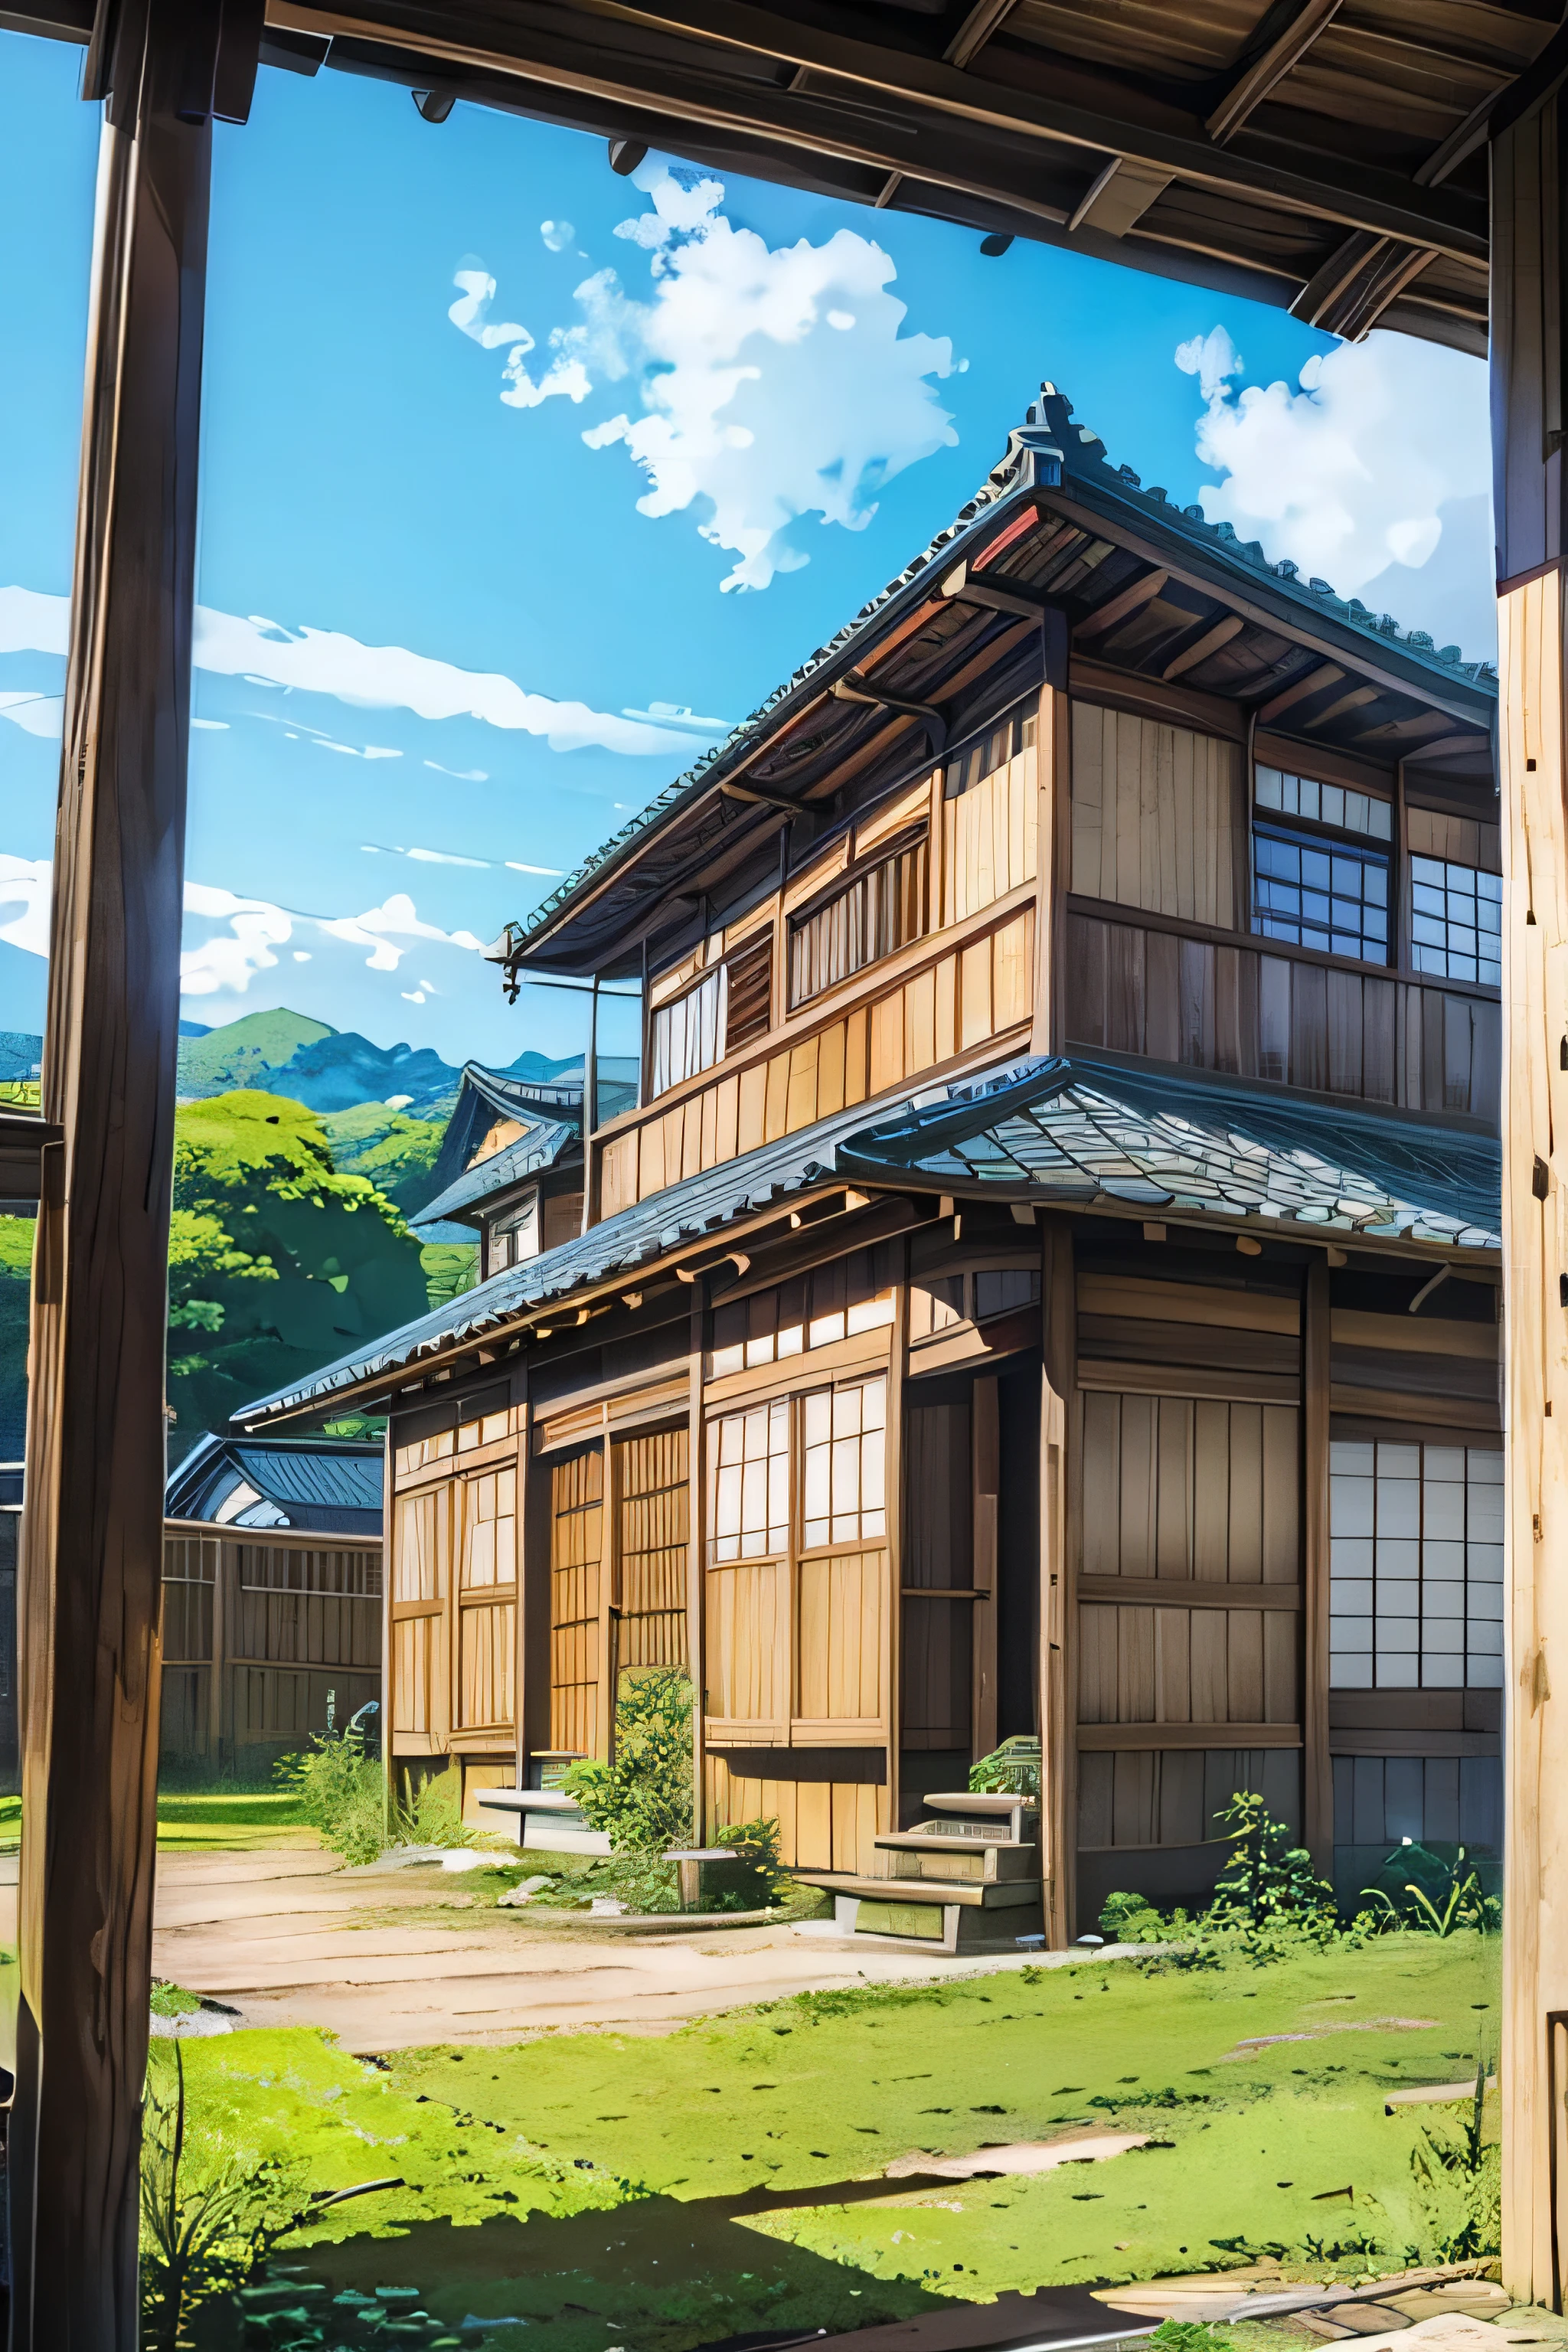 低角度、广角镜头、老日本房子、traditional wooden house in the 國家side、國家、廣闊的藍天、动漫背景